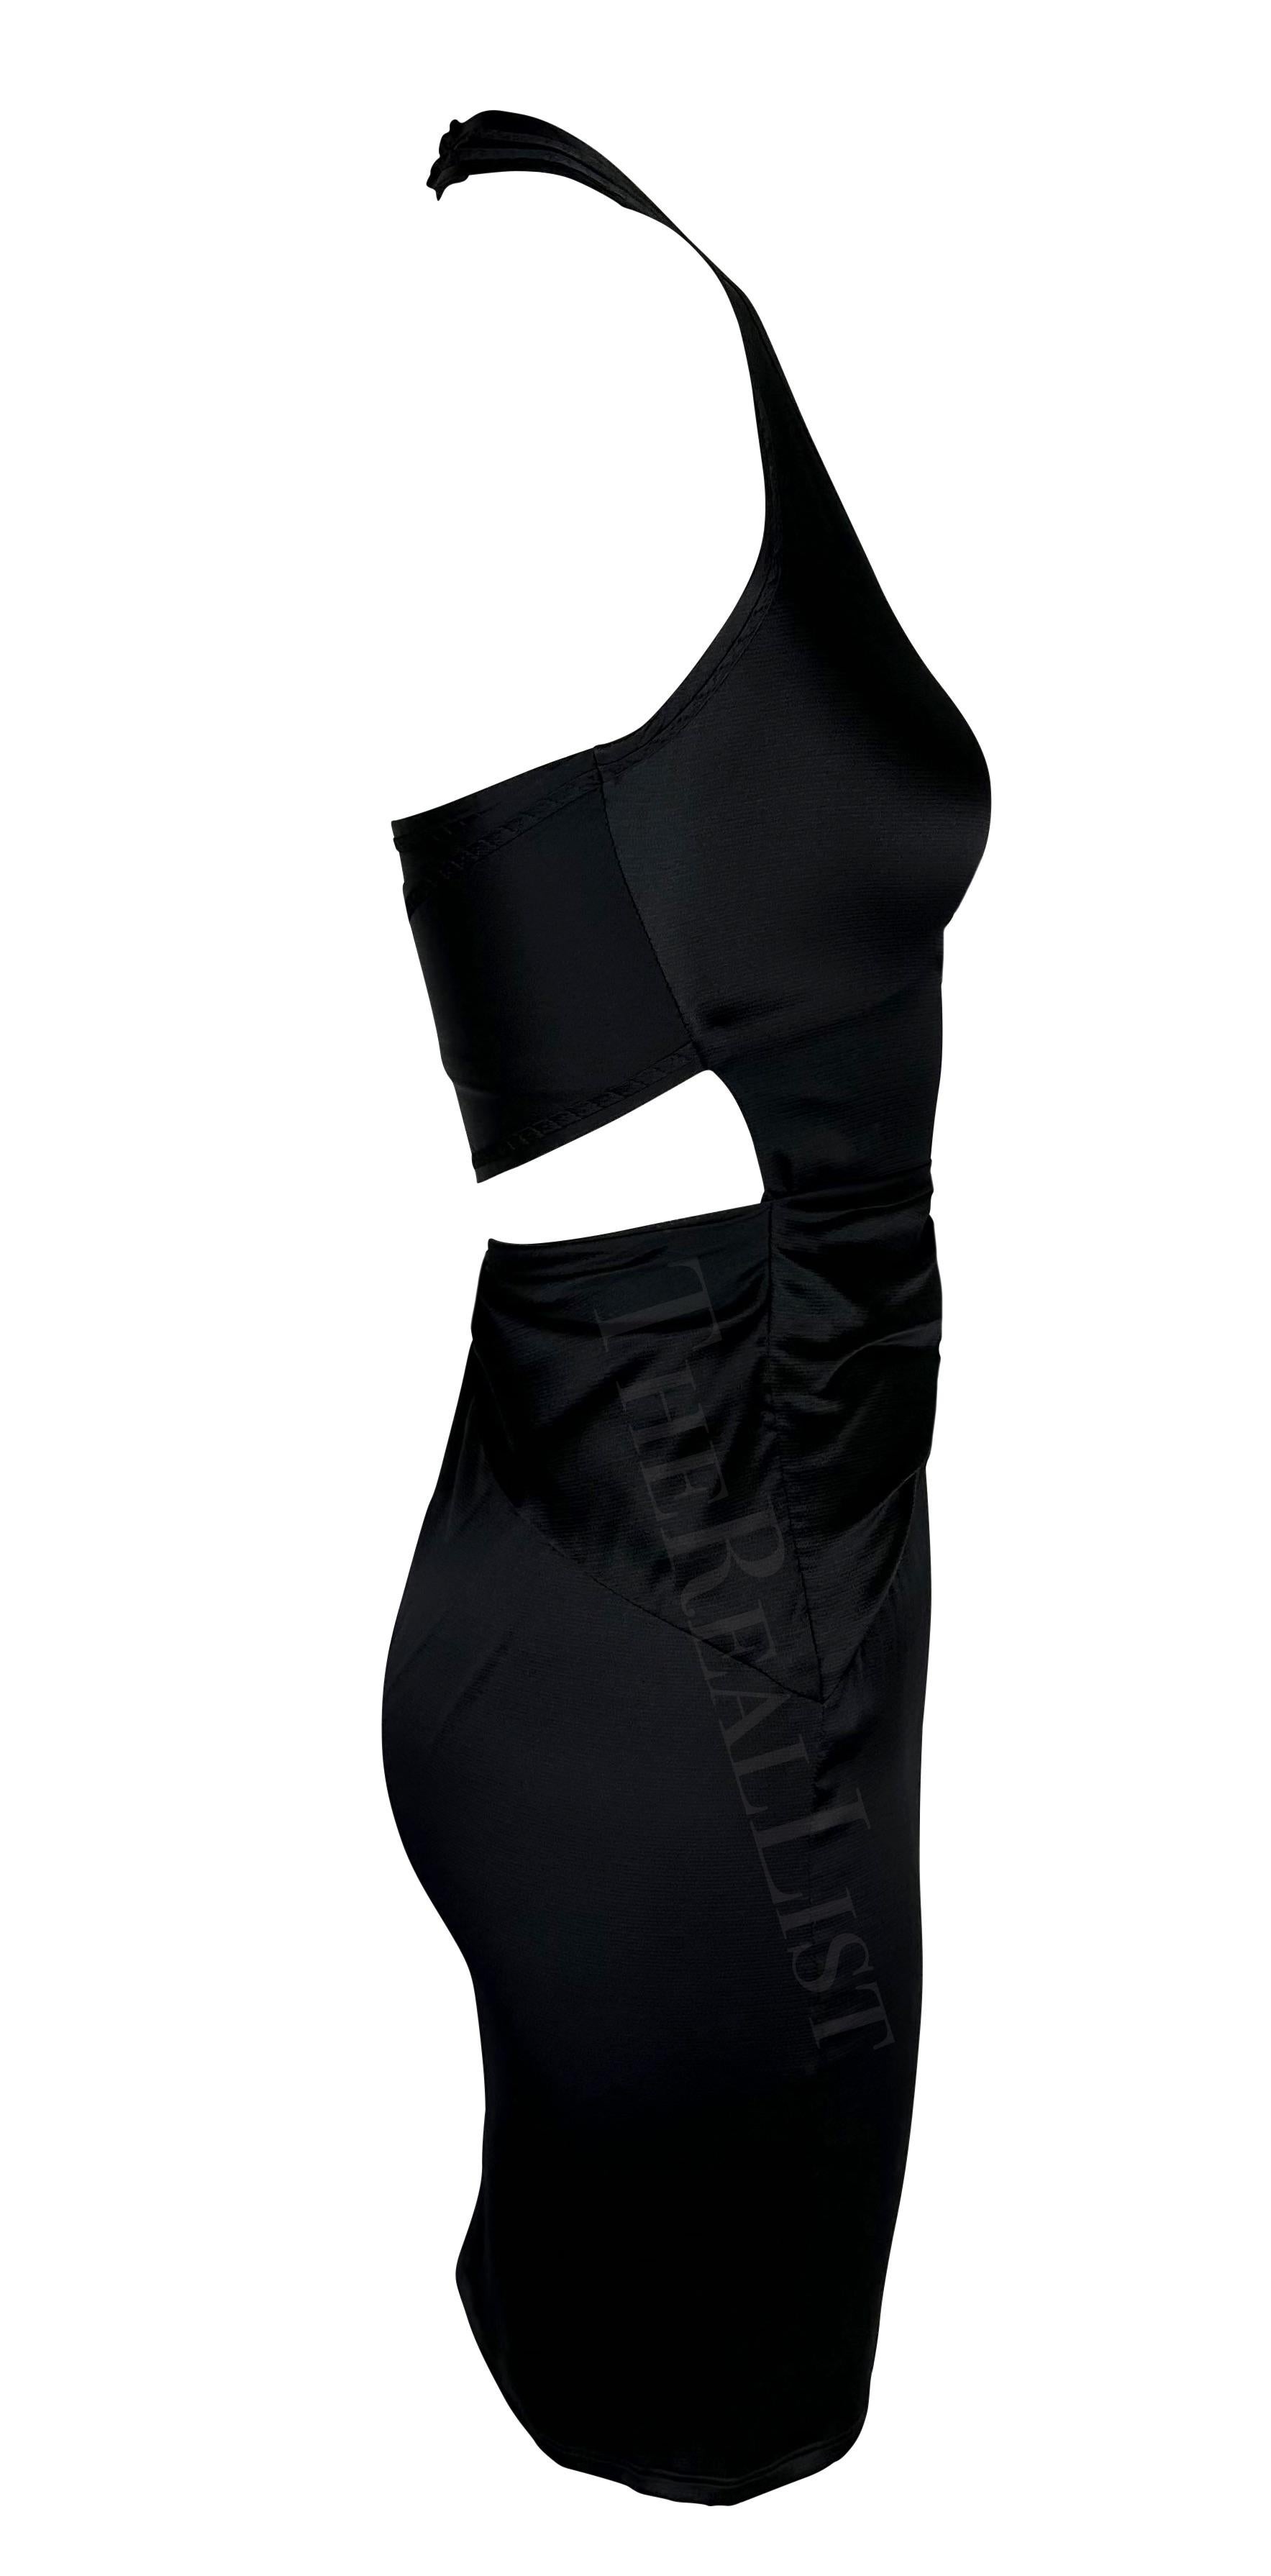 Ich präsentiere ein schwarzes Gucci Minikleid mit Neckholder aus Satin, entworfen von Alessandra Facchinetti. Dieses Kleid aus der Frühjahr/Sommer-Kollektion 2005 zeichnet sich durch Raffungen im Vorderteil, Ausschnitte im Rückenteil und einen